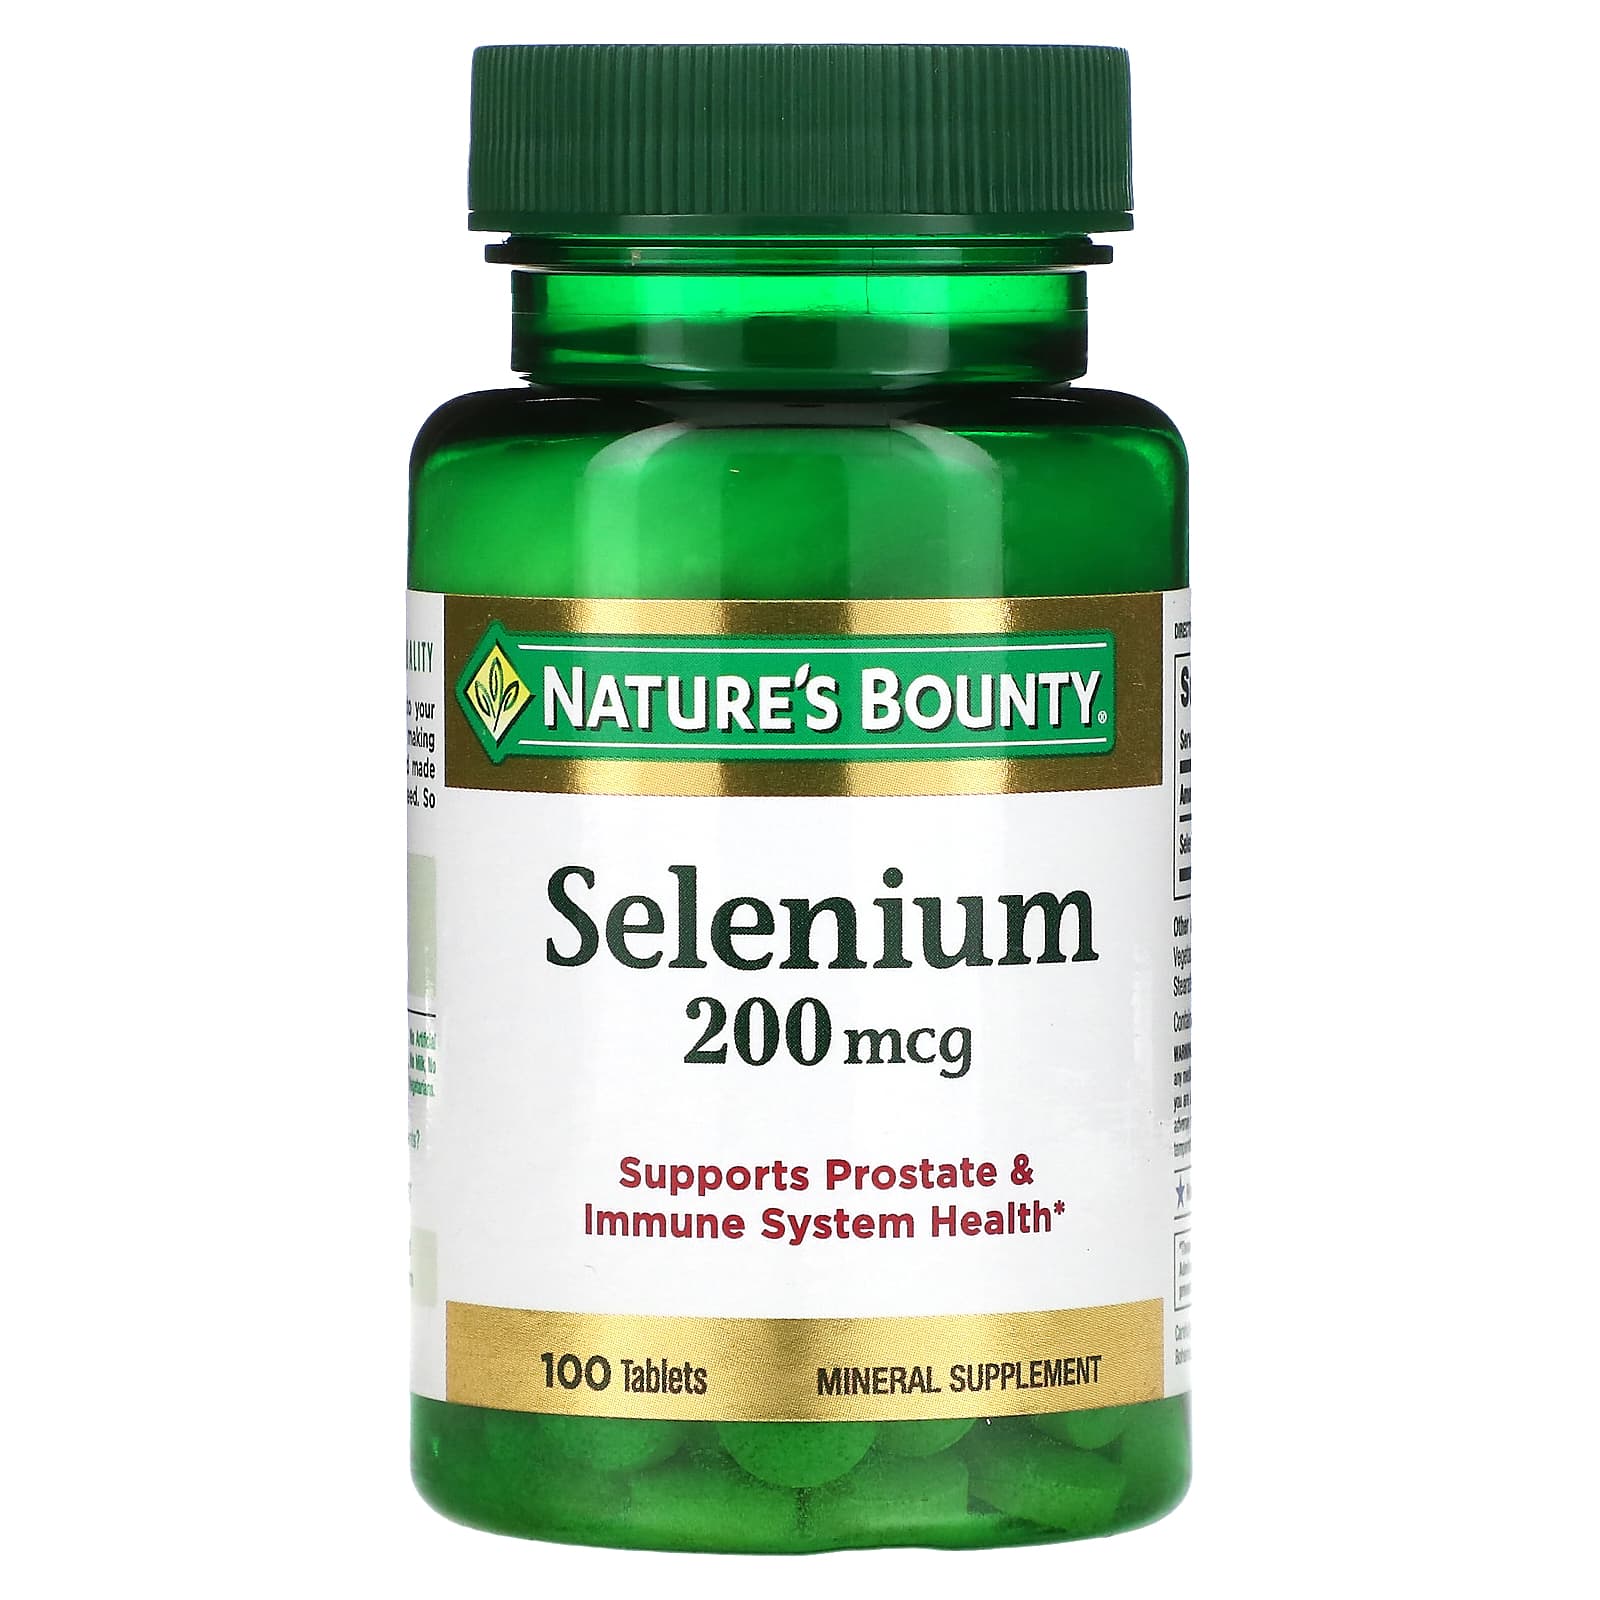 Nature's Bounty Selenium 200 mcg